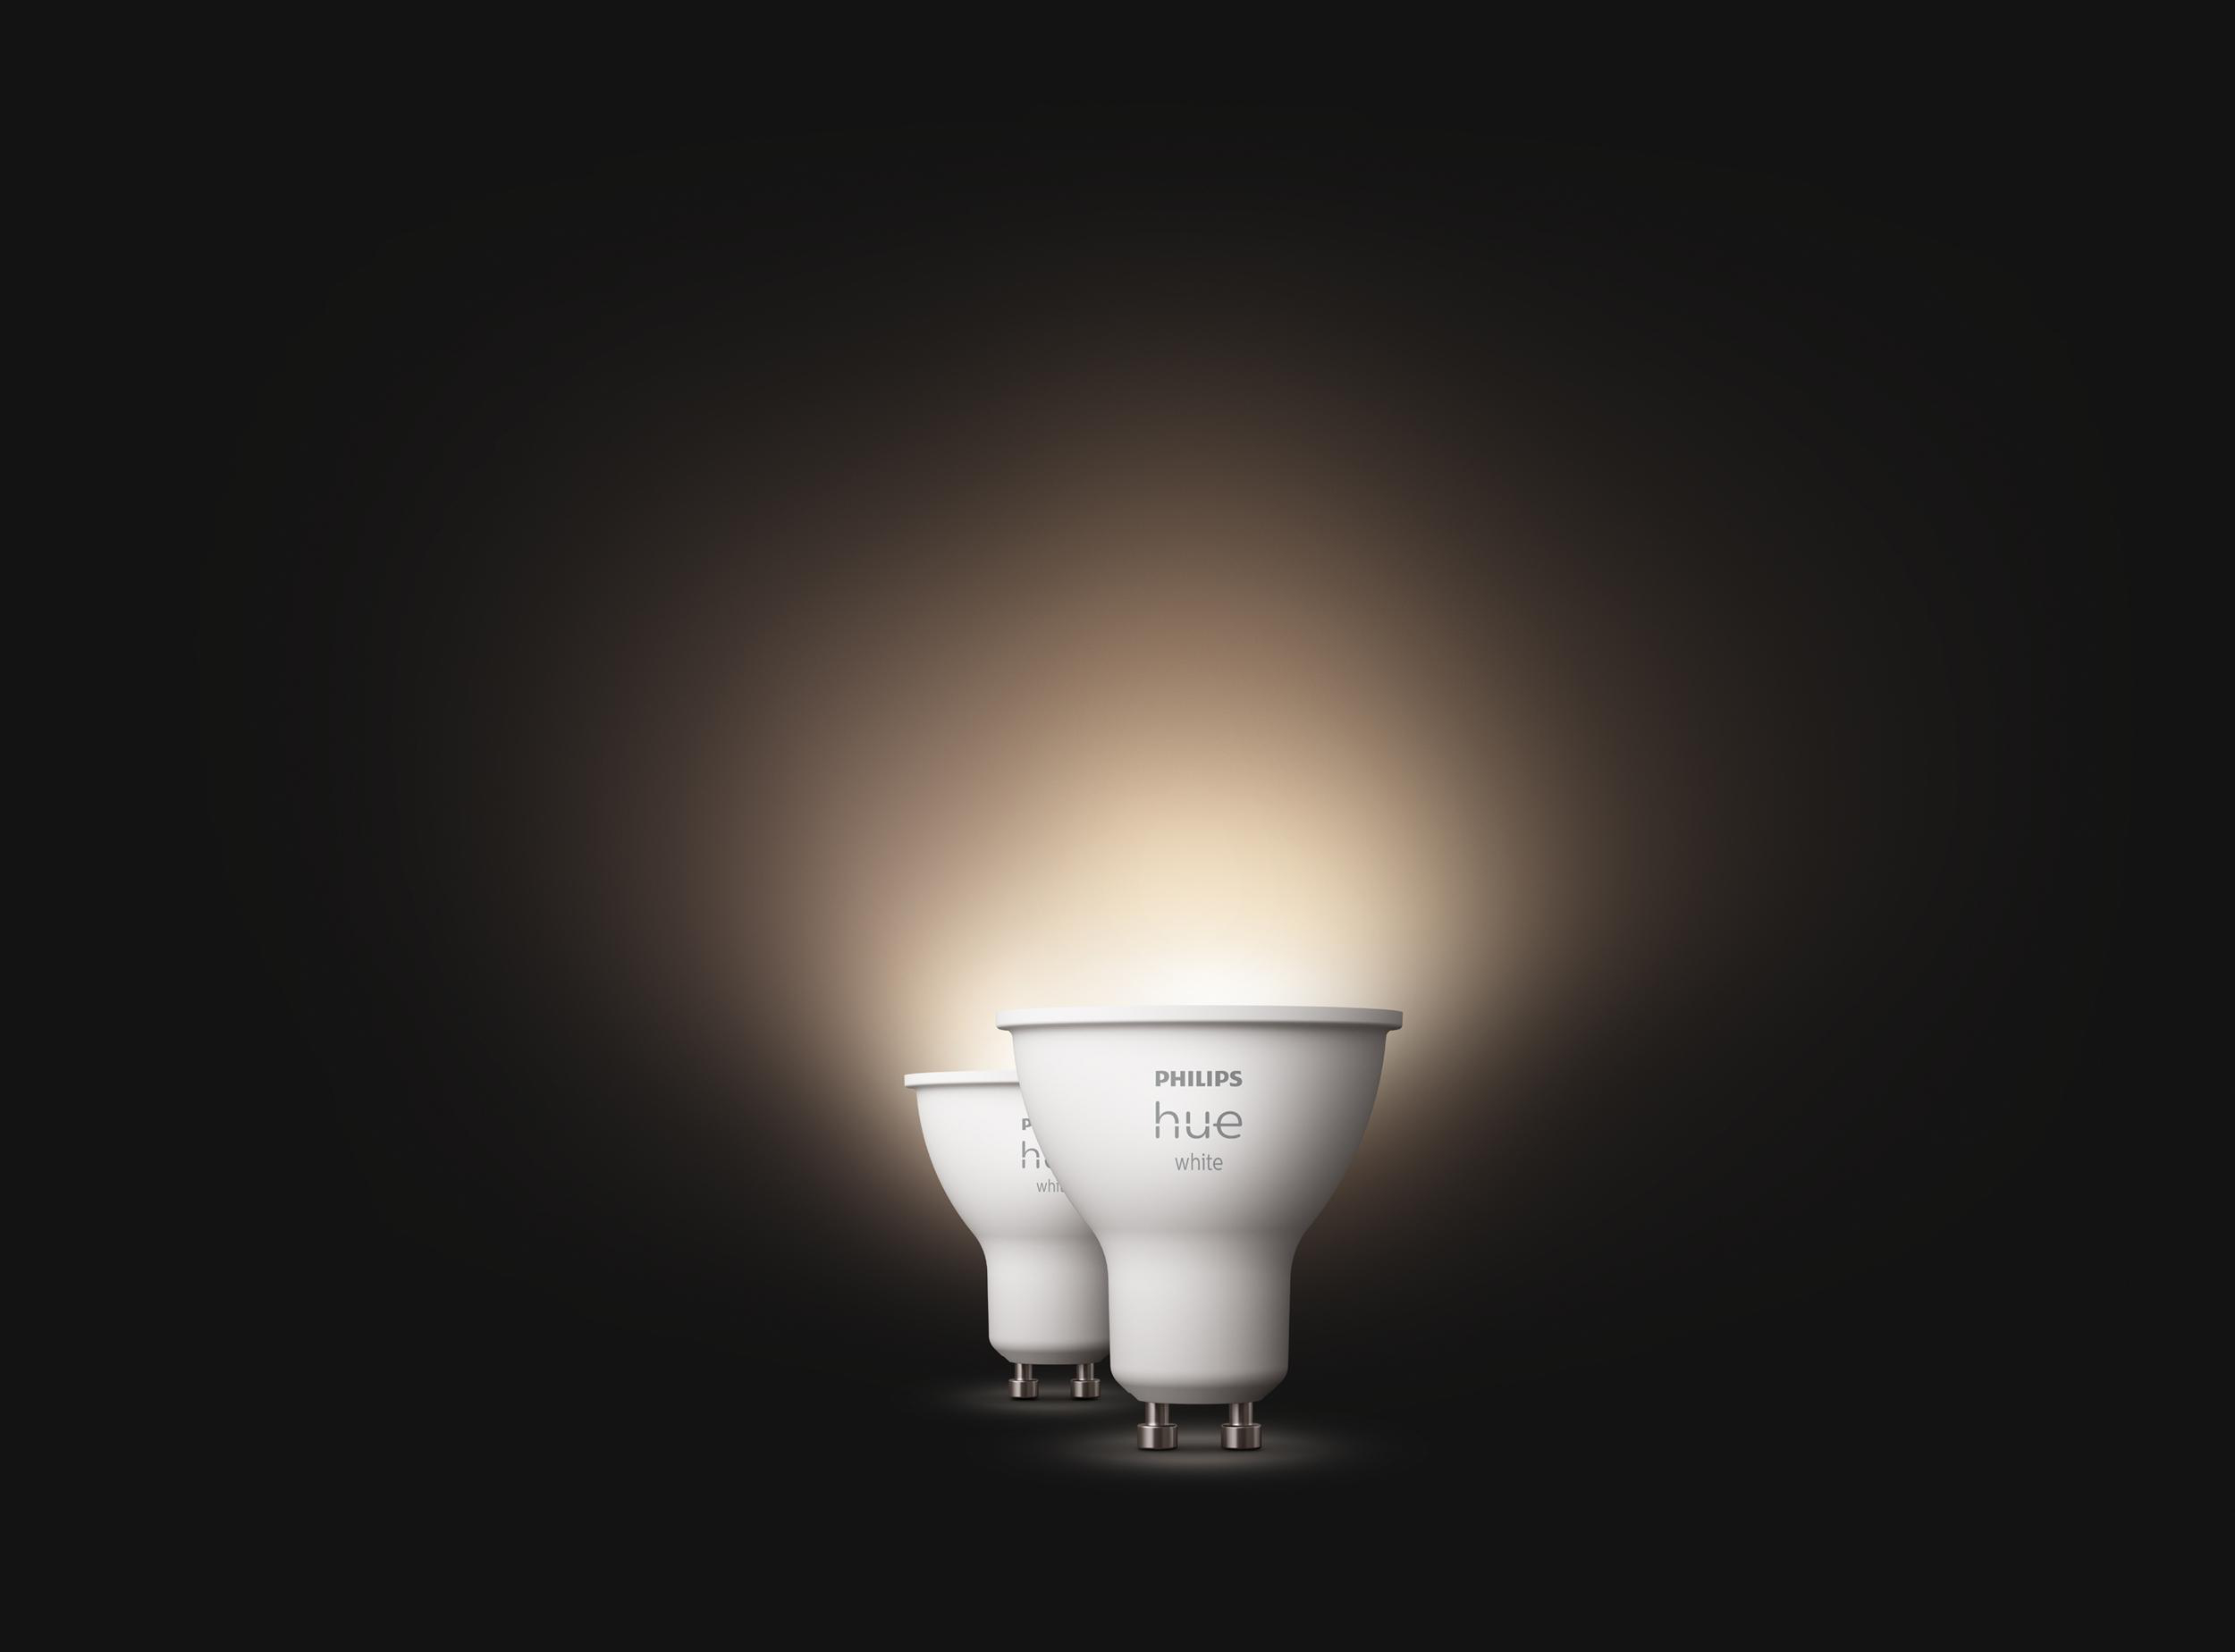 Hue LED Lampe Doppelpack Warmweiß GU10 White PHILIPS